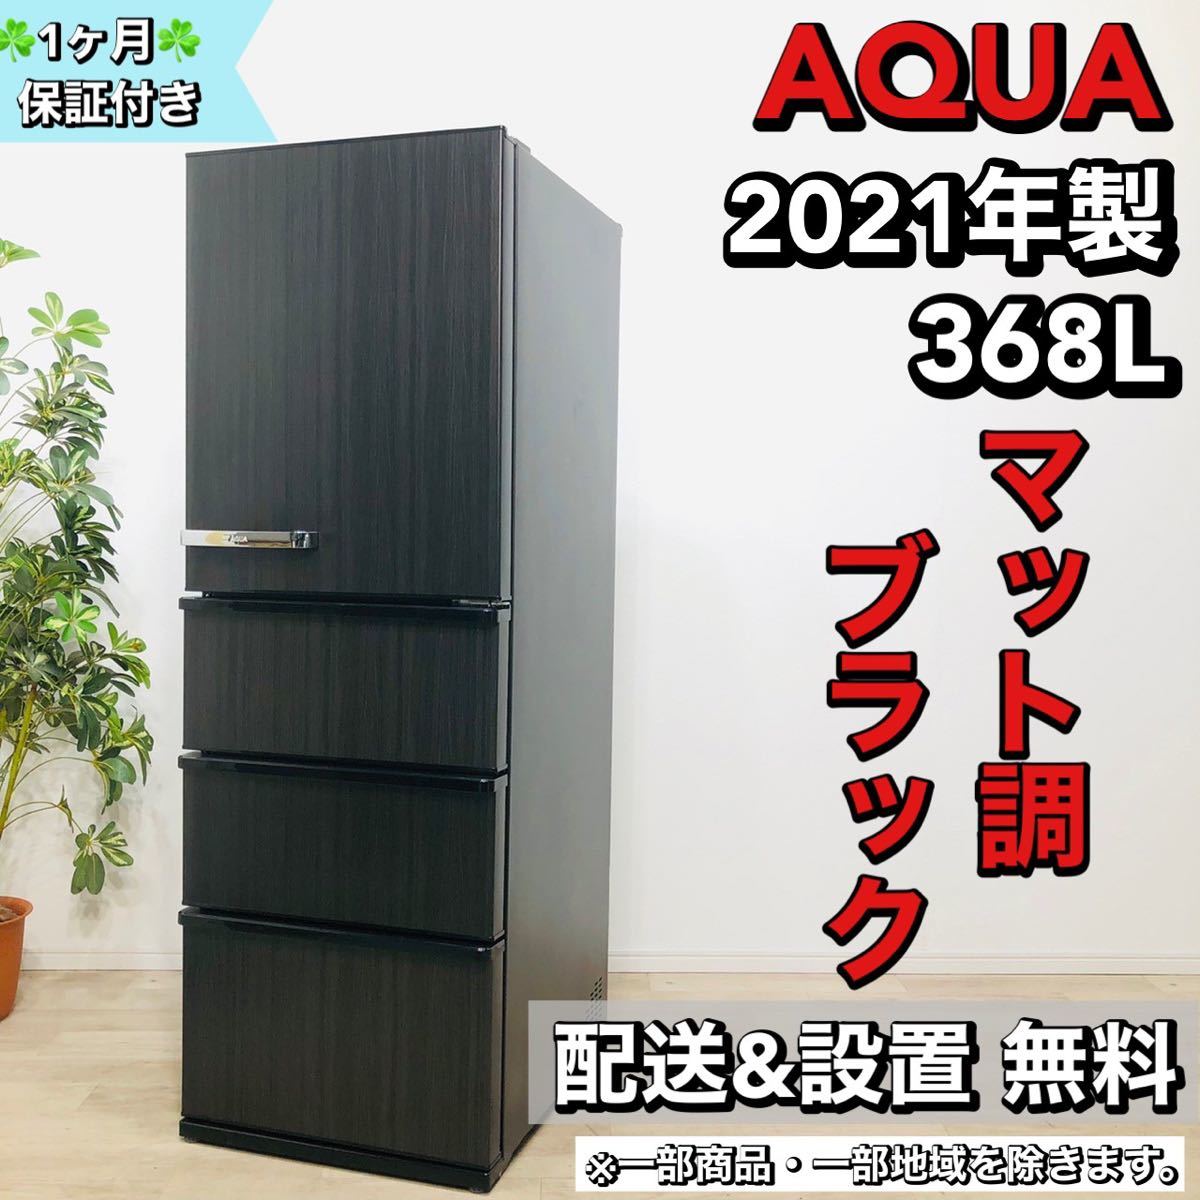 日本に AQUA a1483 4ドア冷蔵庫 368L 2021年製 45 300リットル